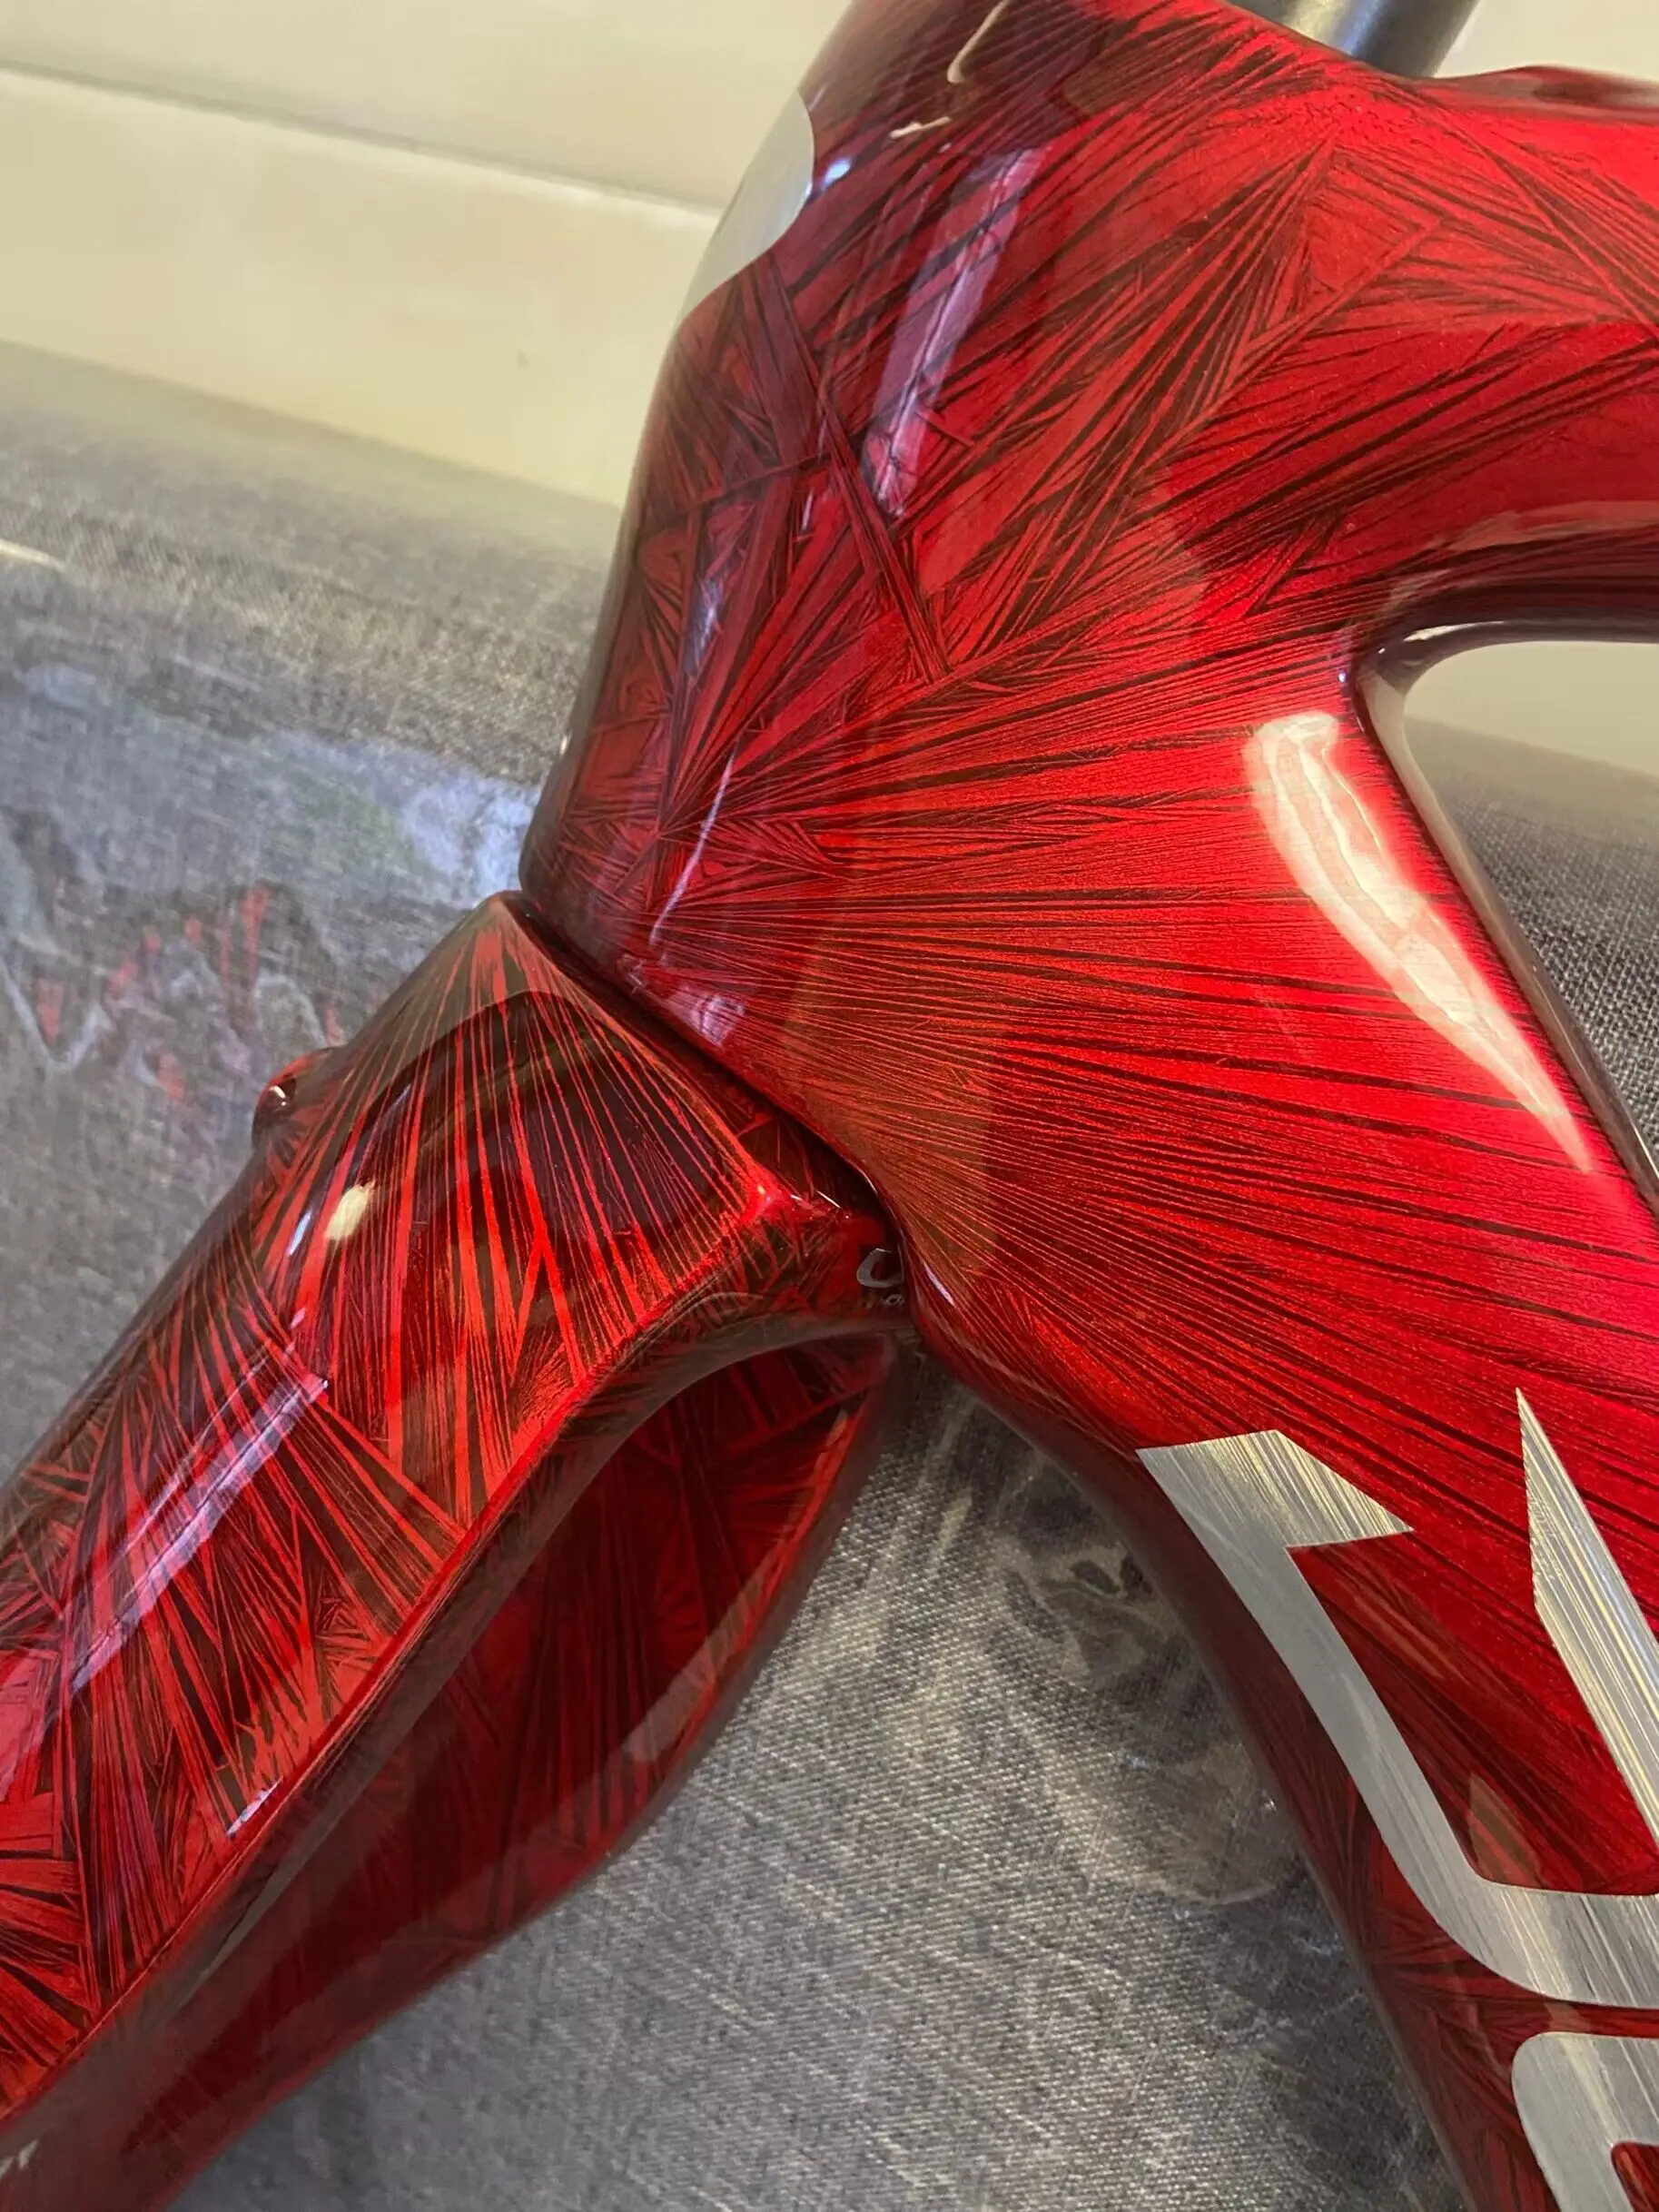 Новейшая краска красного цвета замораживает трещины на раме дорожного велосипеда глянцевые велосипедные рамы T1100 с замерзающими трещинами на серебряных логотипах, диски, тормоза